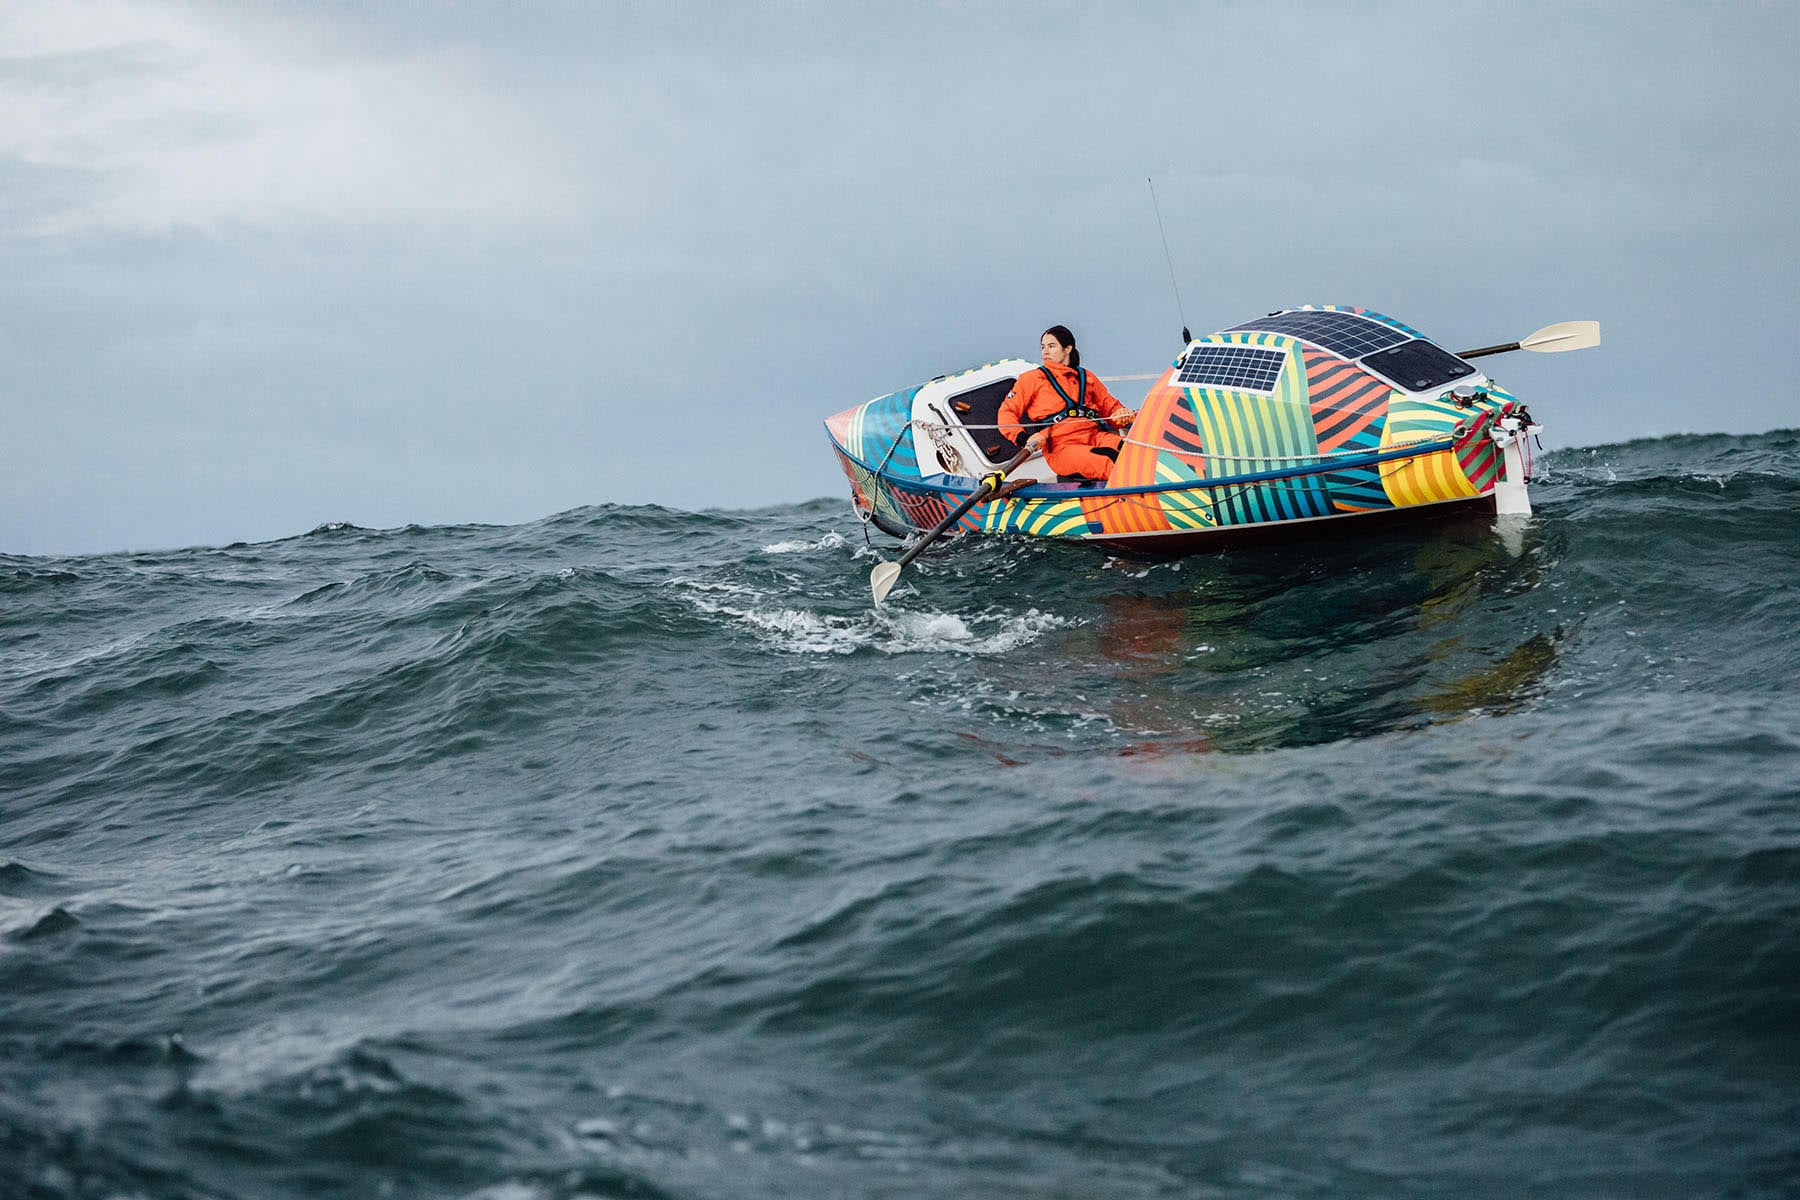 rower lia ditton's farallon islands attempt popsugar